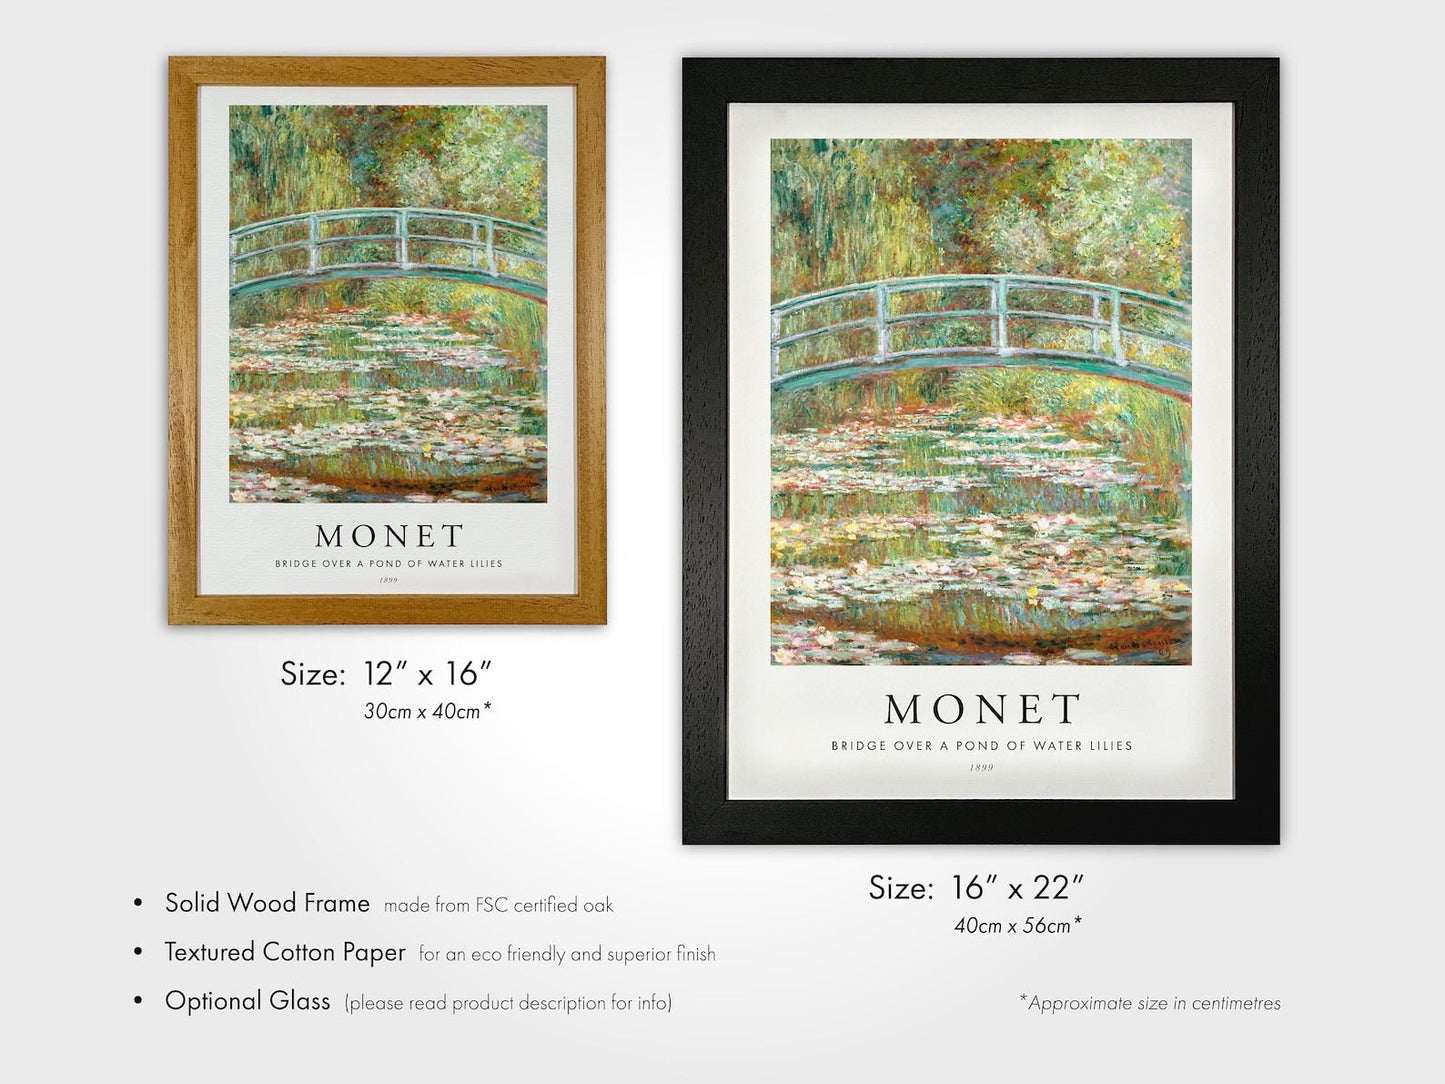 CLAUDE MONET - Set Of 3 Famous Prints (Poster Style) - Pathos Studio - Art Print Sets